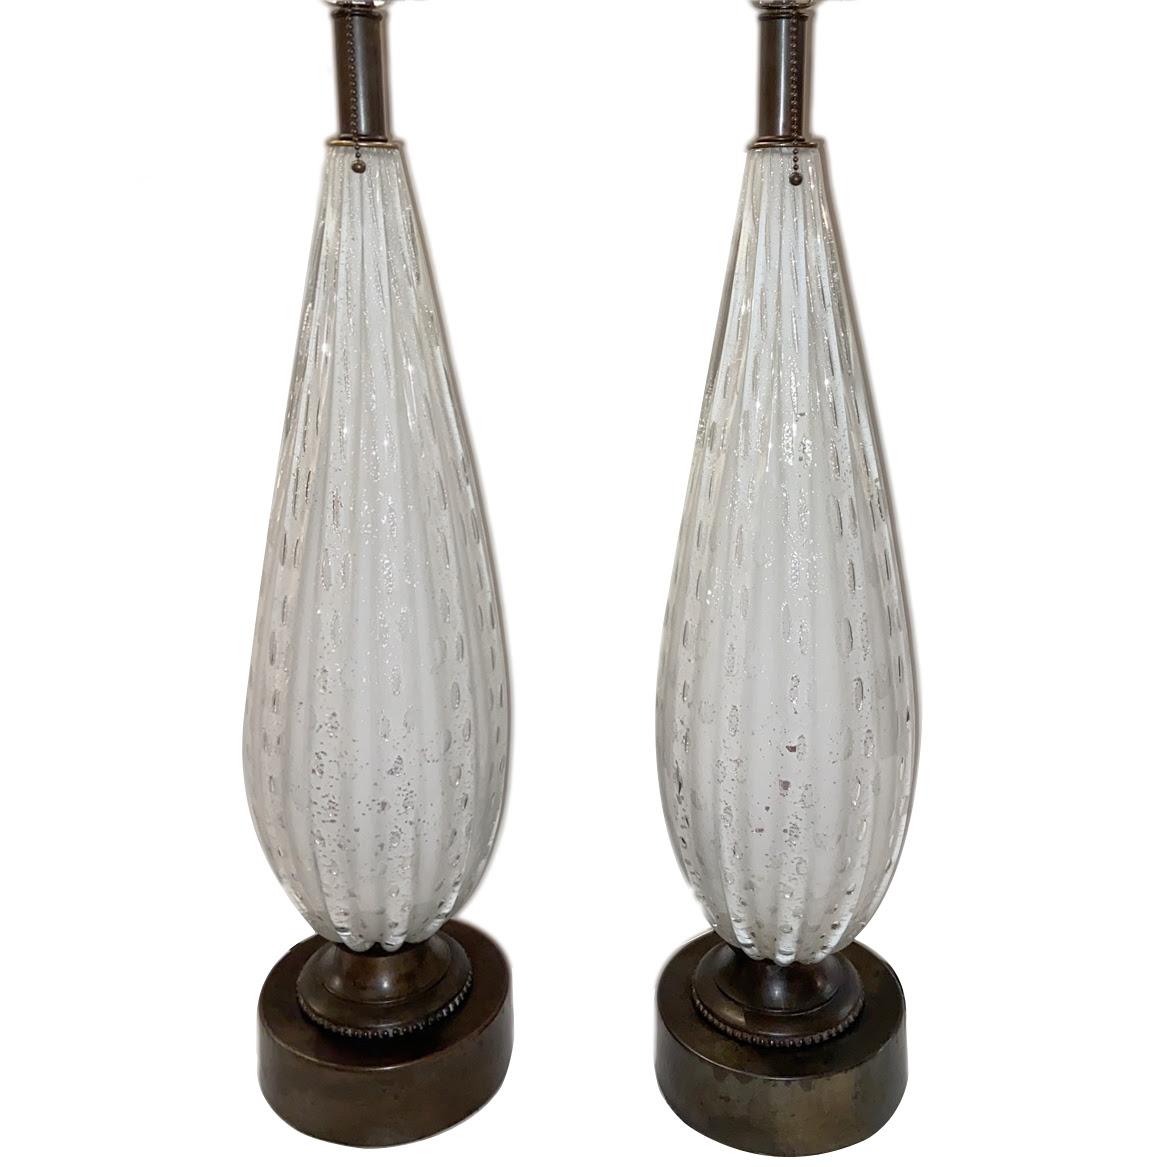 Paire de lampes de table en verre de Murano, vers 1950

Dimensions : Hauteur du corps : 24″ Hauteur de l'abat-jour : 36″